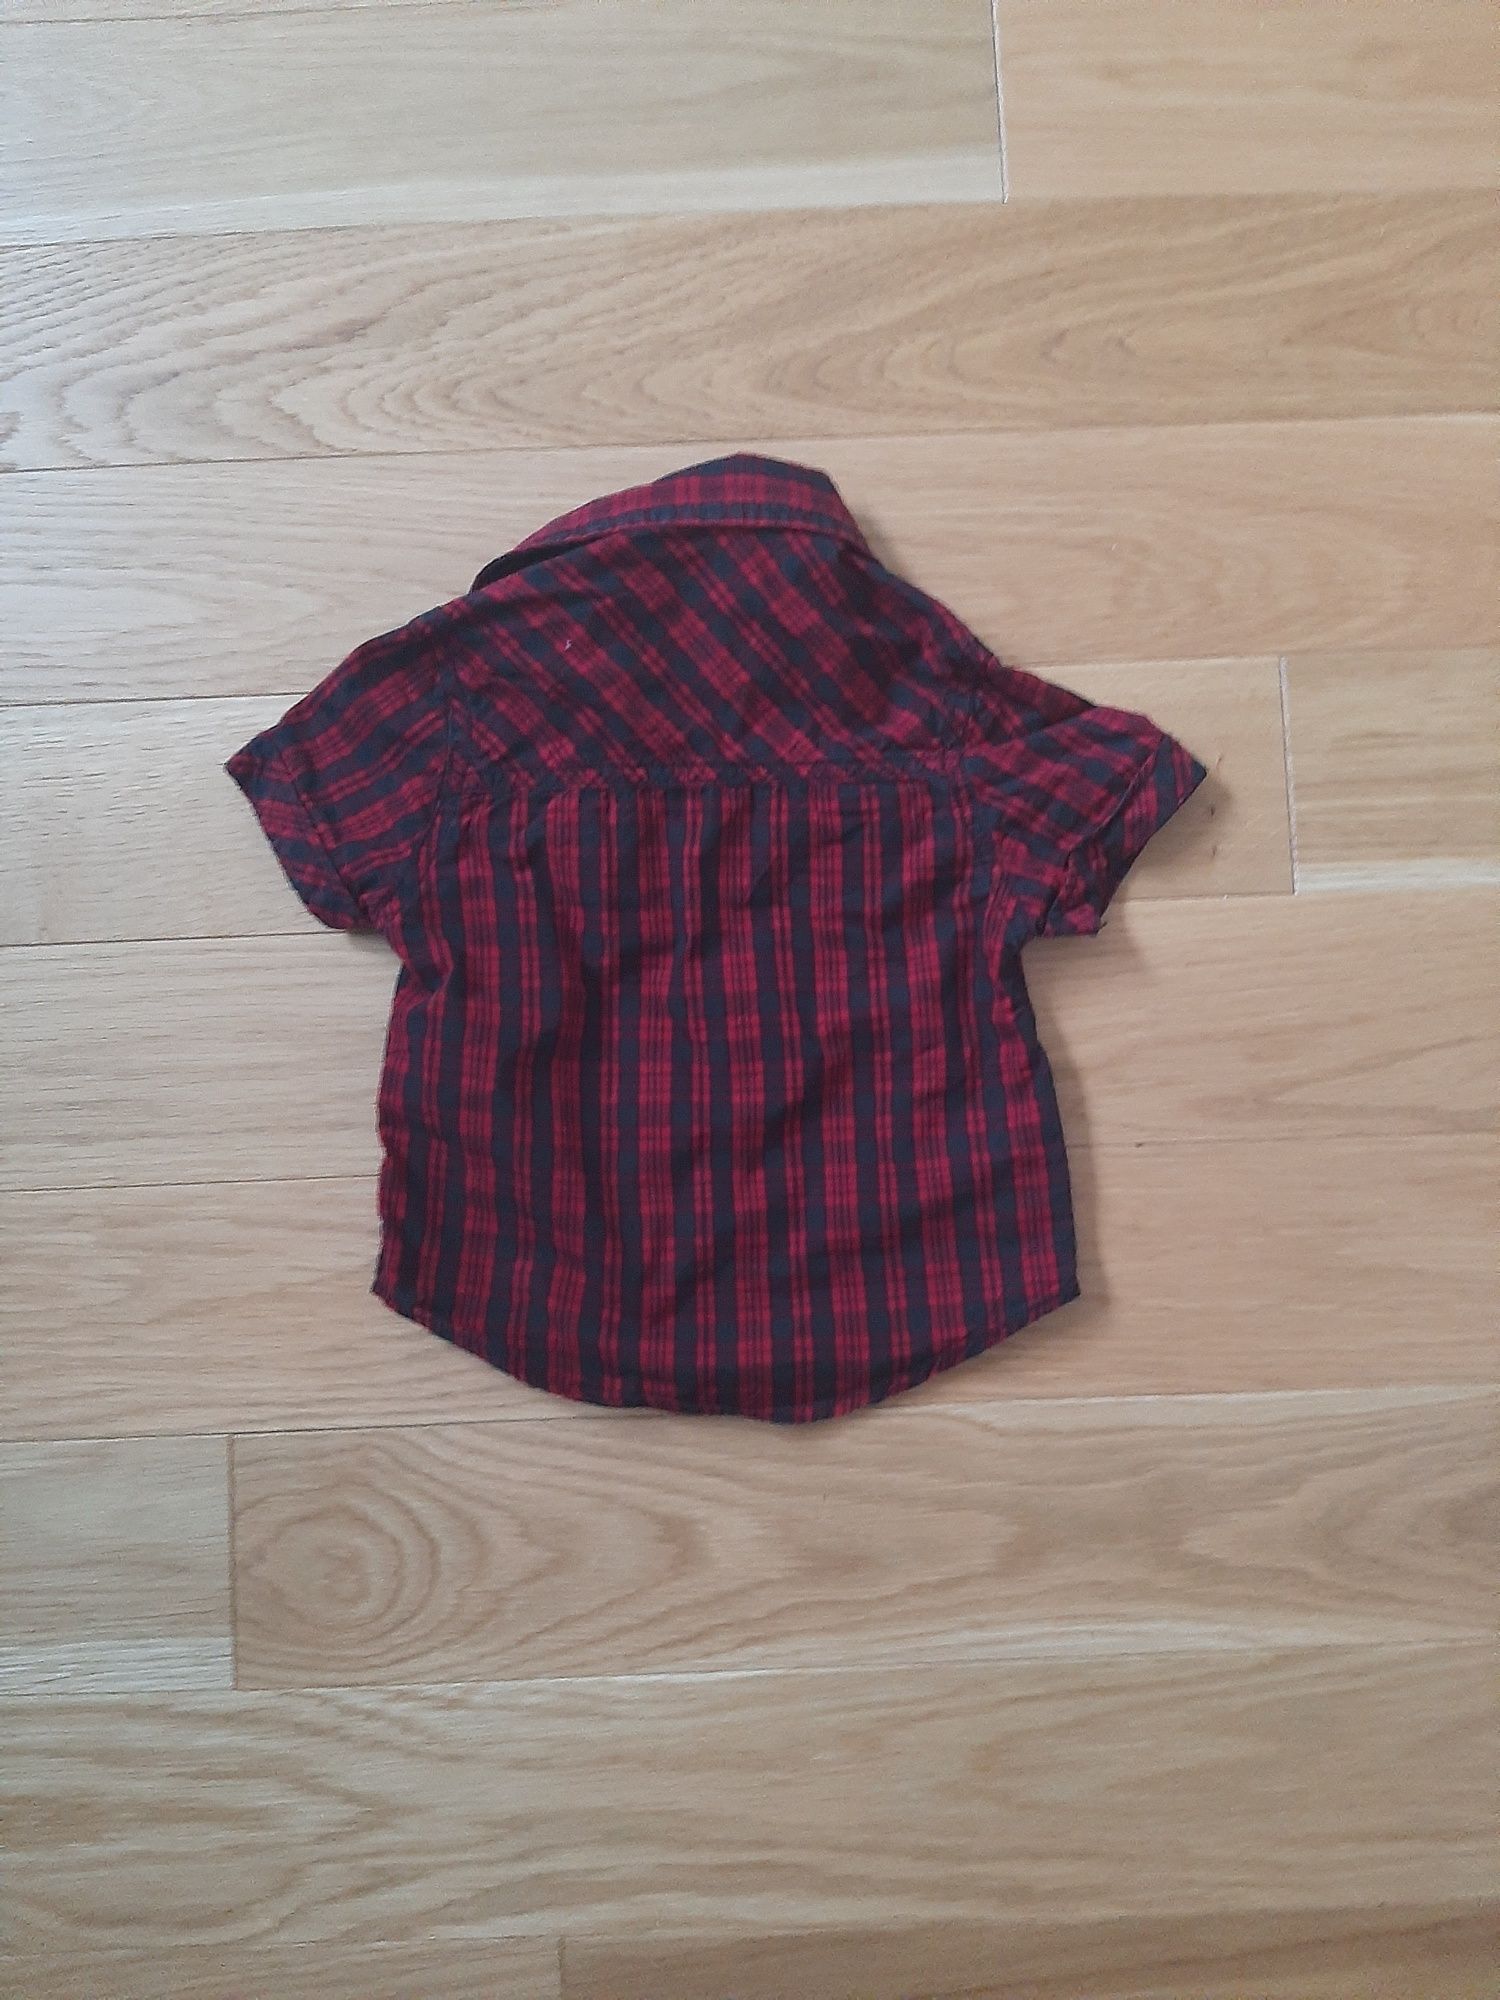 Bordo burgund czerwona koszula koszulka z krótkim rękawem w kratę 80 r